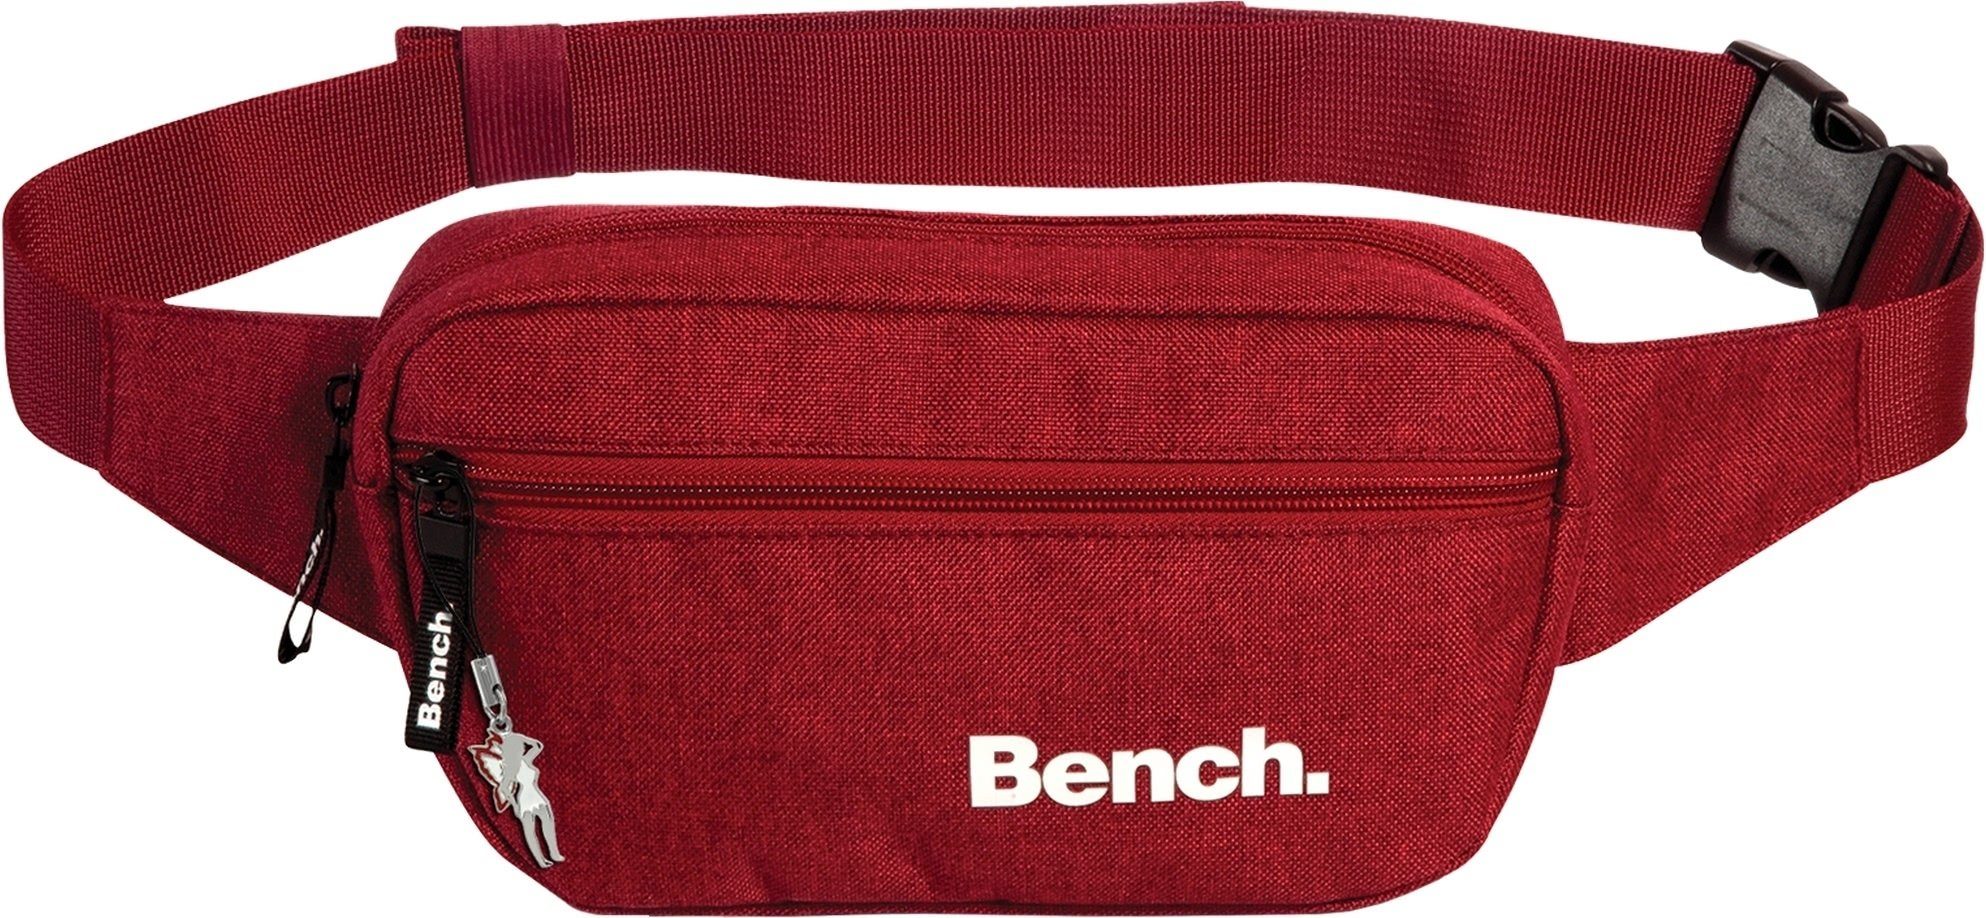 Bench. Gürteltasche Bench stylische Hip Bag (Gürteltasche), Damen, Jugend Gürteltasche aus Polyester in rot, ca. 23cm Breite Weinrot